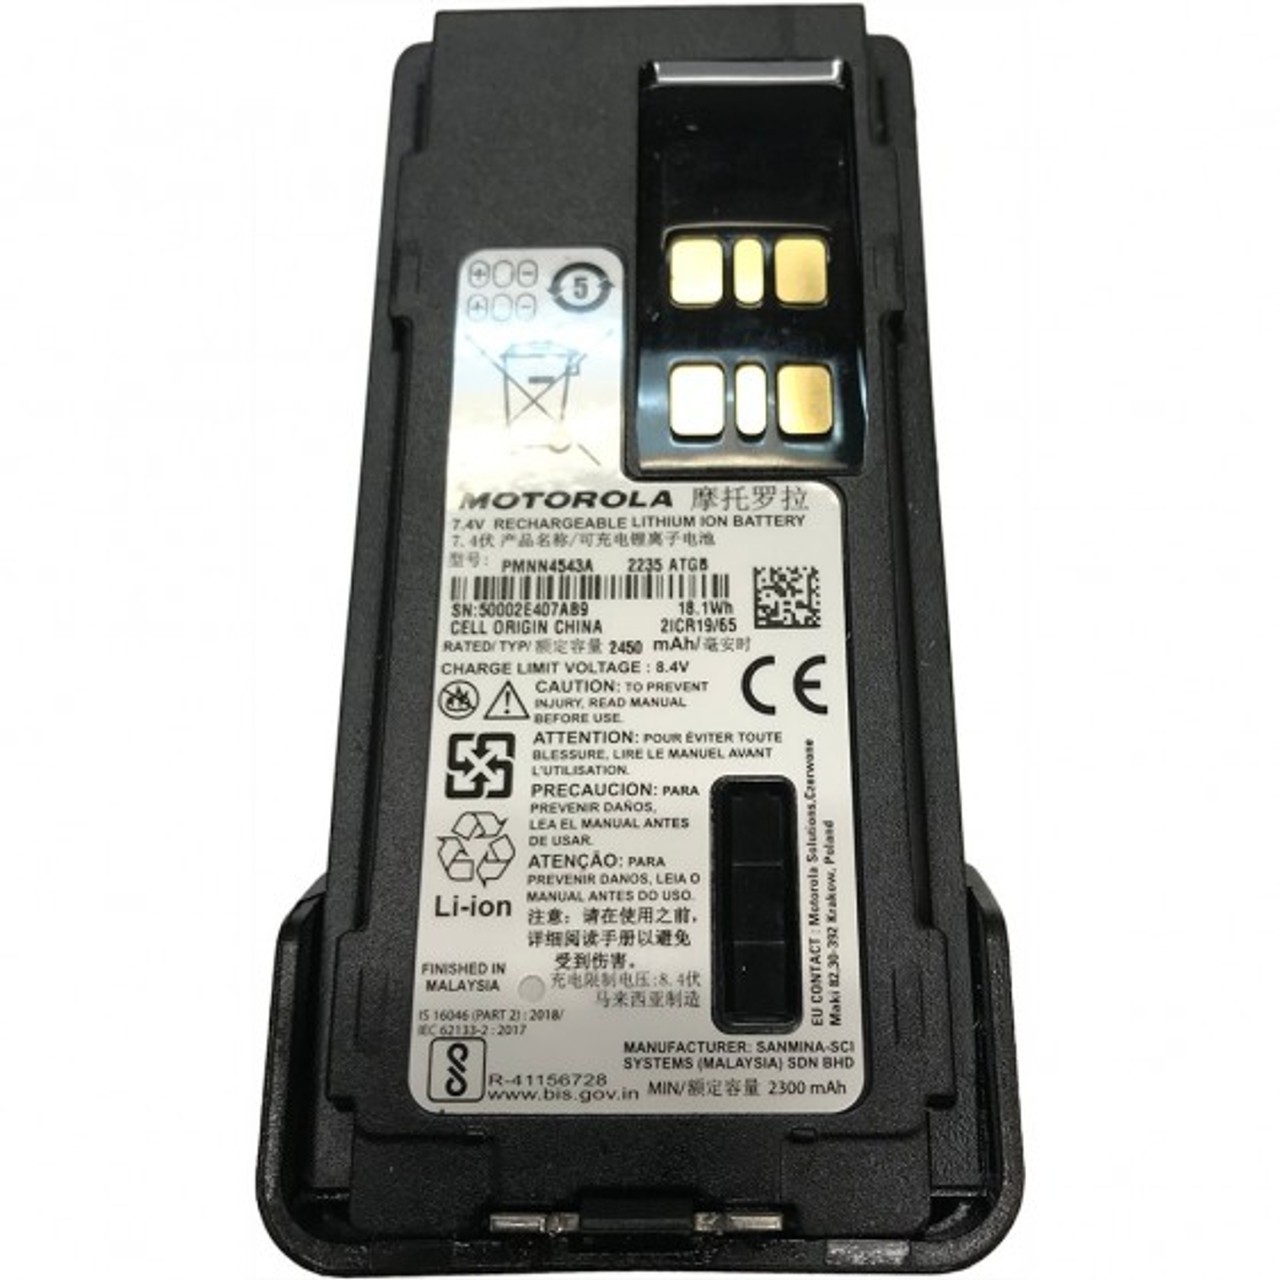 Motorola Battery PMNN4543 for Radio DP2400e